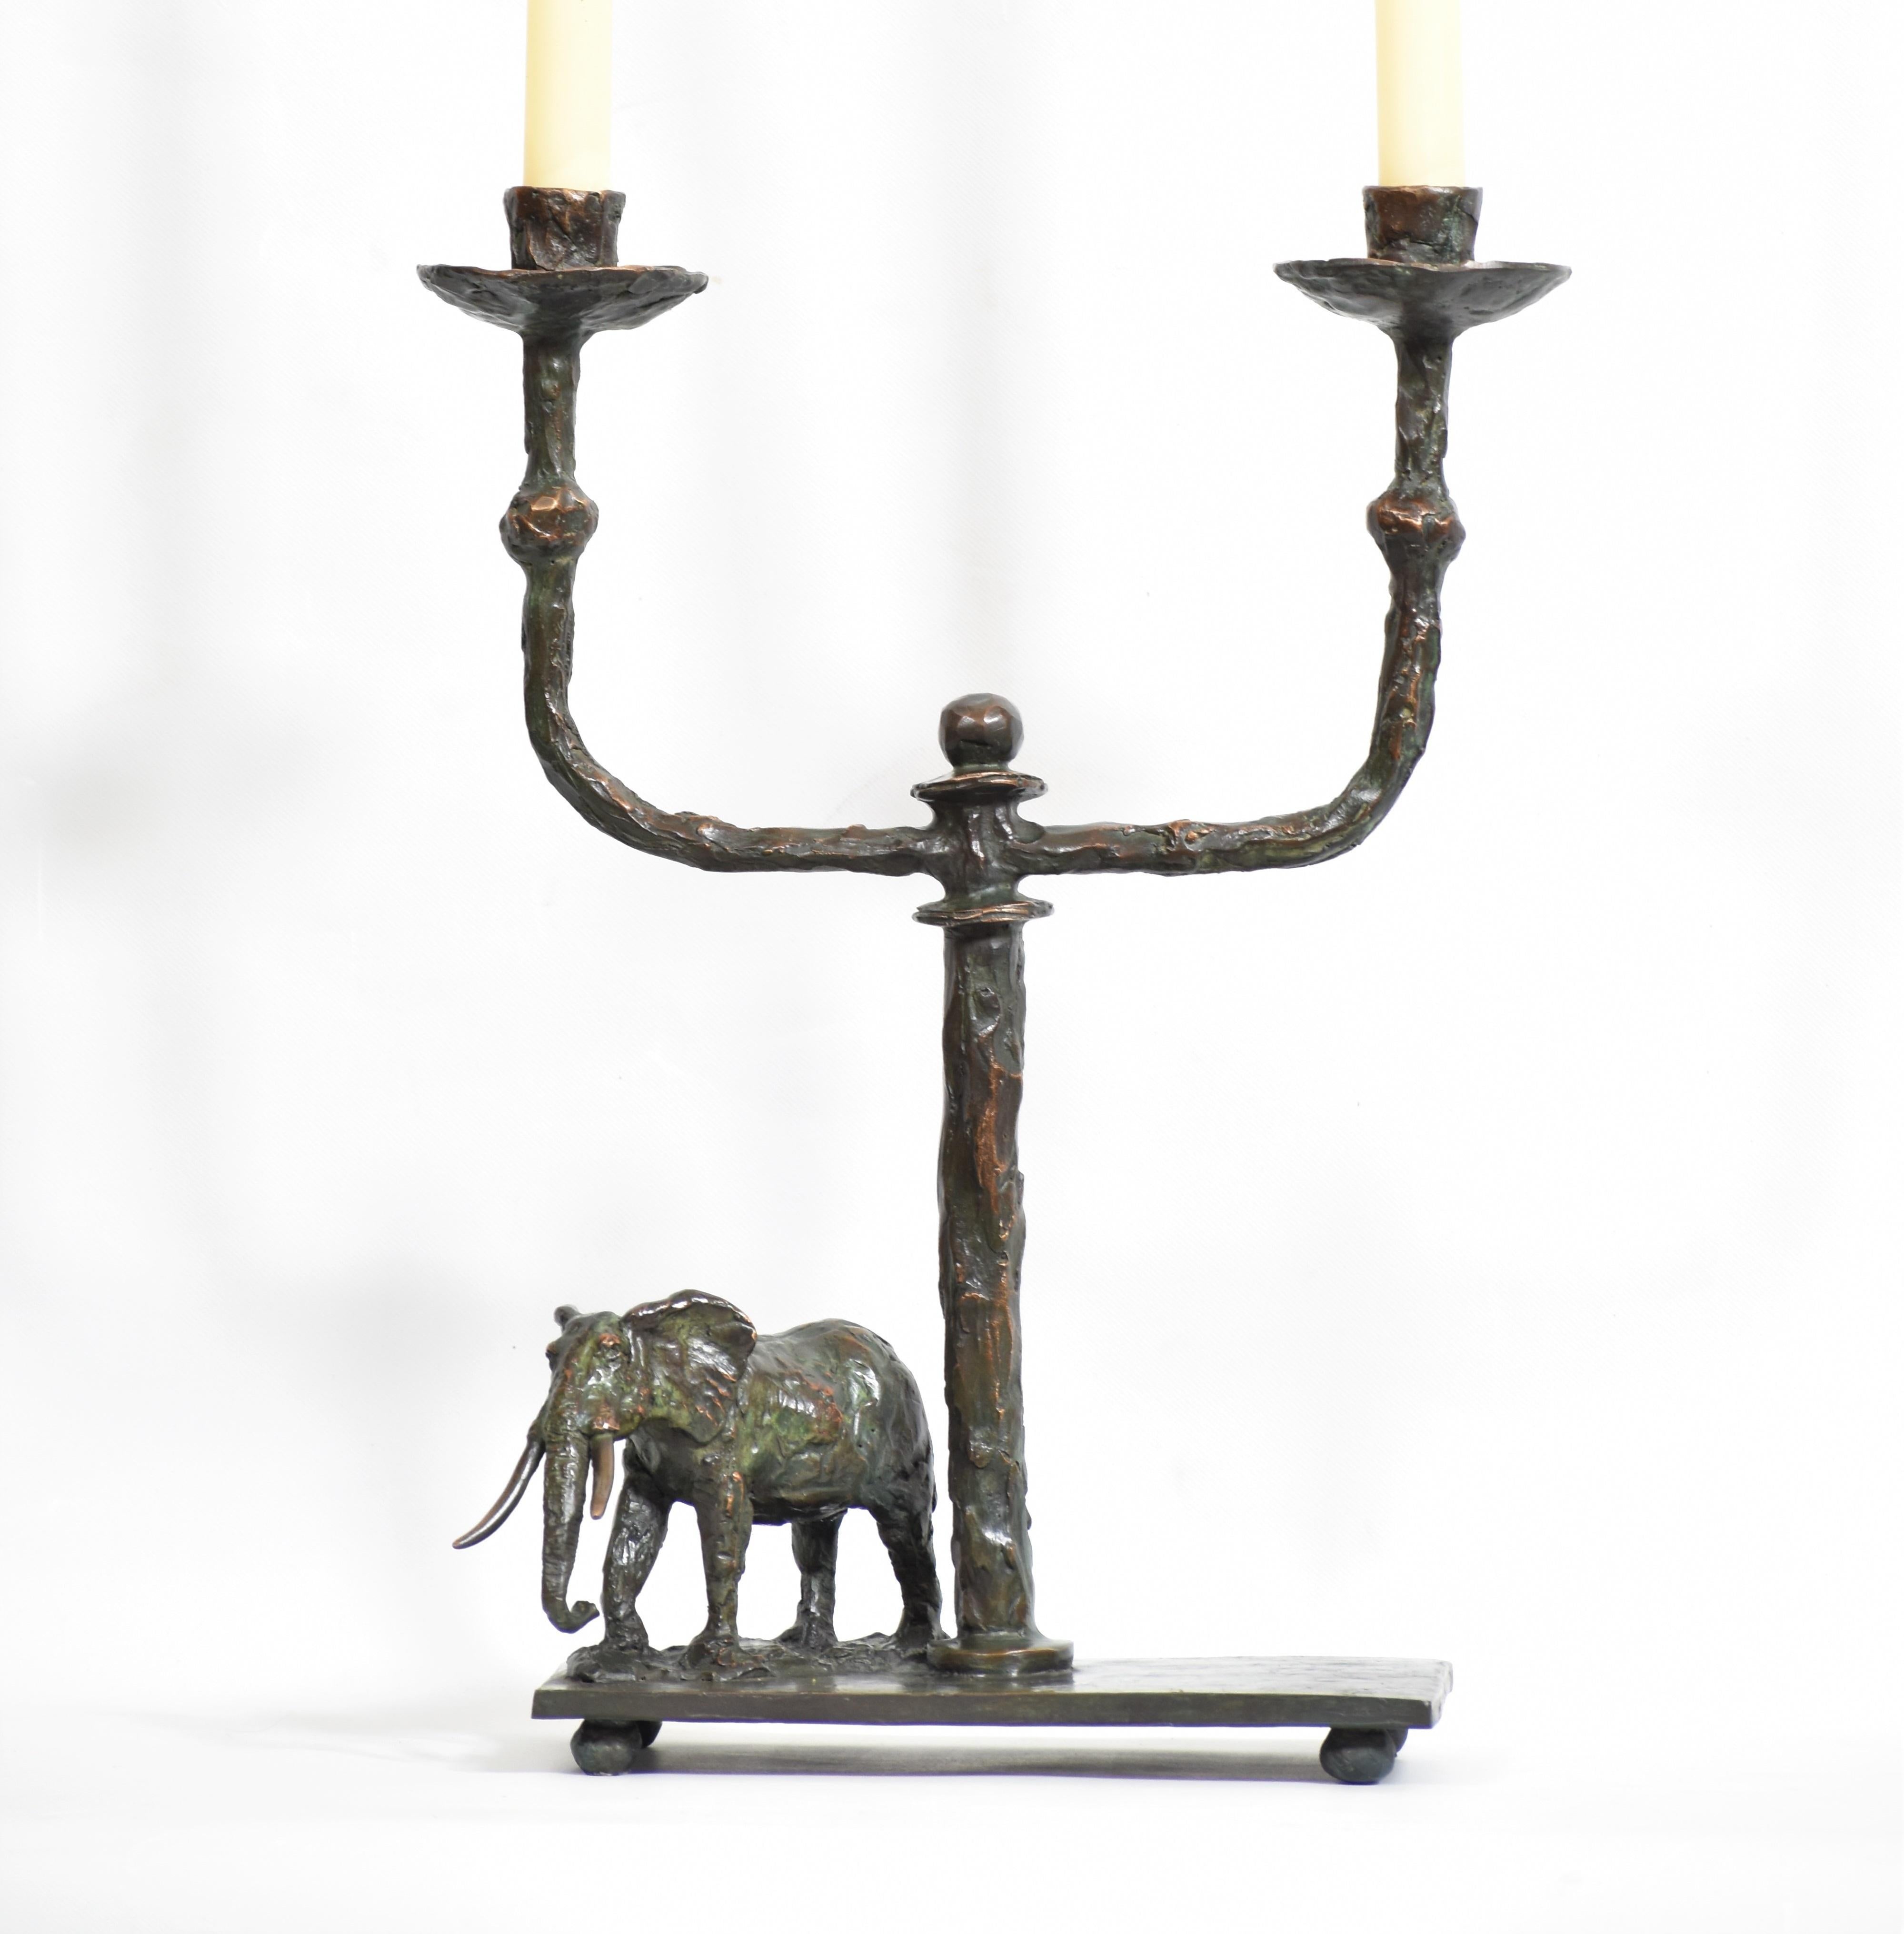 Elefanten-Kerzenleuchter aus Bronzeguss
Dieser Leuchter, der Kunst und Funktionalität verbindet, ist mit einer Bronzeskulptur des Elefantenbullen, dem Wahrzeichen Afrikas, ausgestattet. In Braun schwarz patiniert mit einem Hauch von Verdigris. Jedes